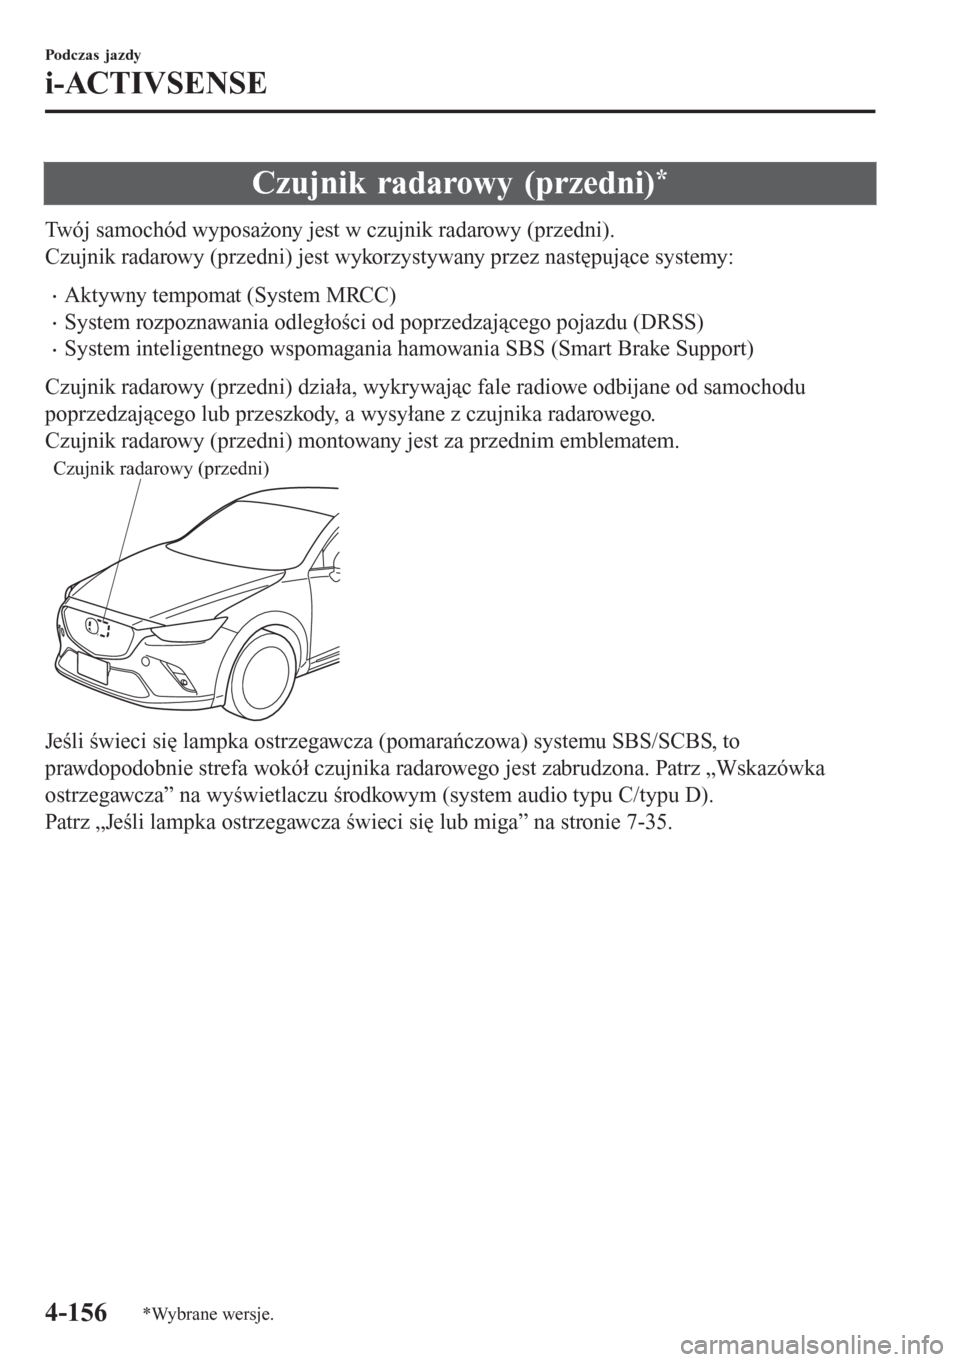 MAZDA MODEL CX-3 2016  Instrukcja Obsługi (in Polish) Czujnik radarowy (przedni)*
Twój samochód wyposażony jest w czujnik radarowy (przedni).
Czujnik radarowy (przedni) jest wykorzystywany przez następujące systemy:
�xAktywny tempomat (System MRCC)
